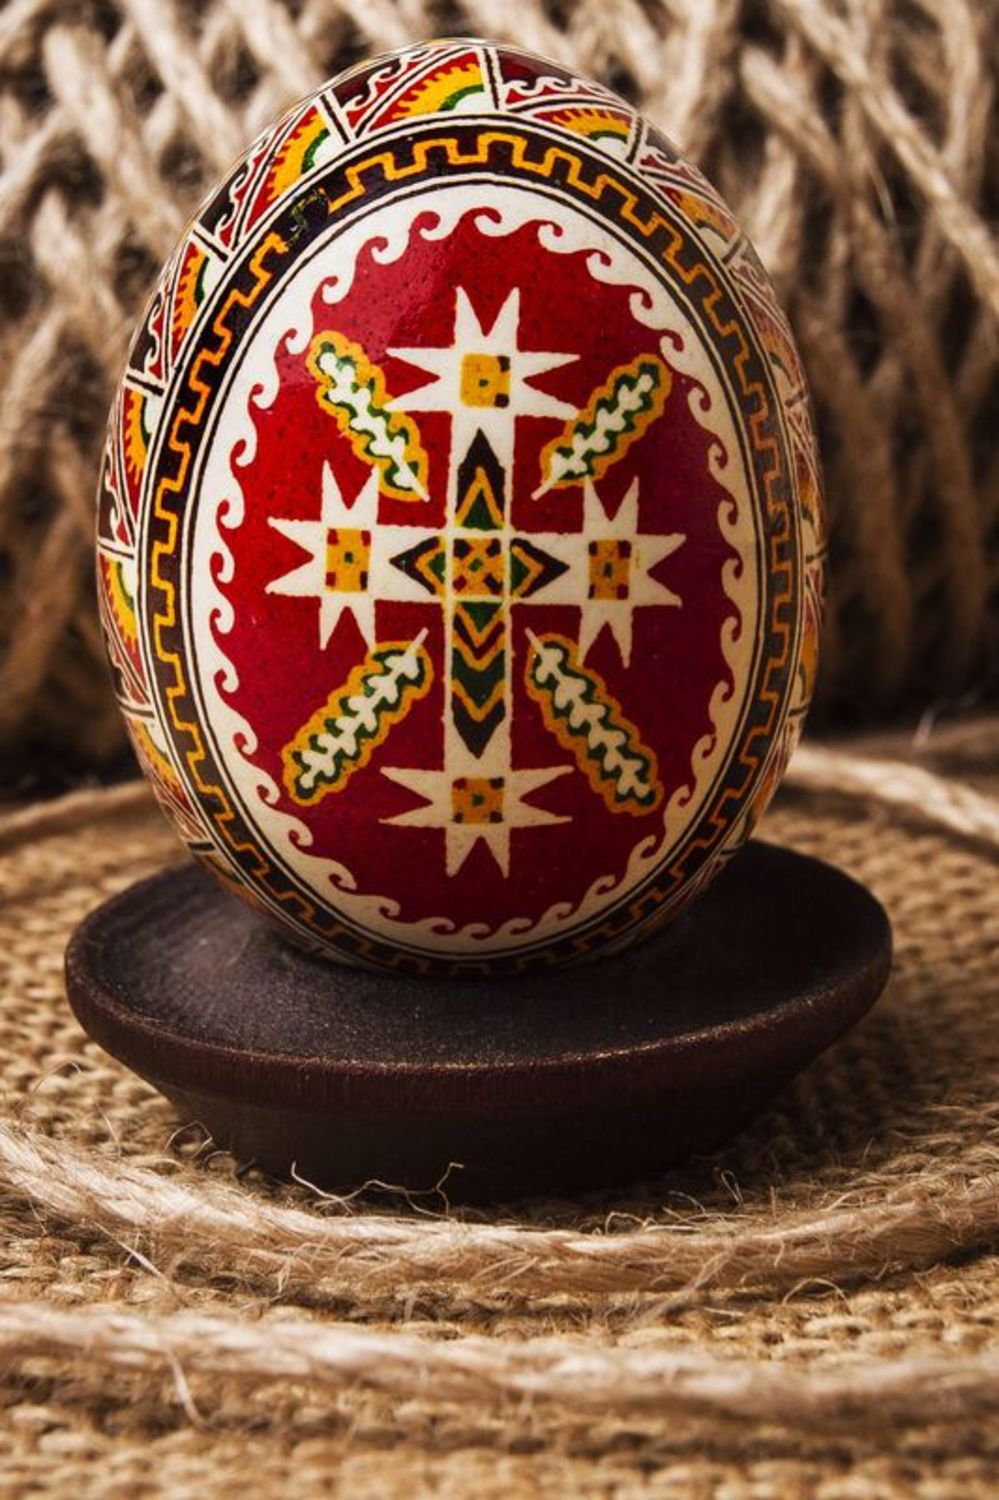 Pyssanka ukrainien de Pâques 
ouef de Pâques photo 1